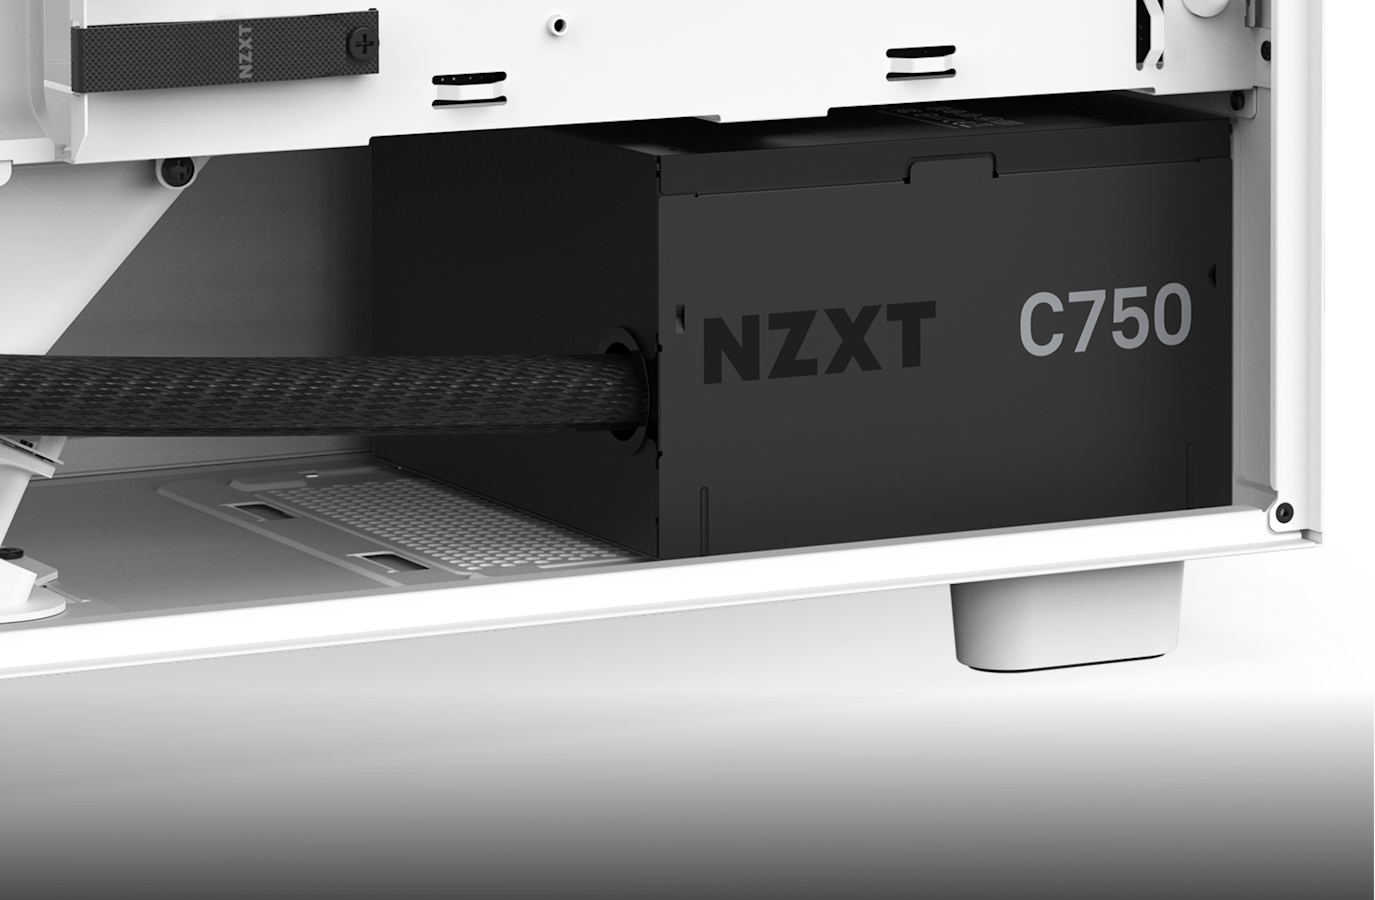 PC-Konfiguration mit NZXT C750 Bronze PSU, im Gehäuse ohne Backpanel installiert